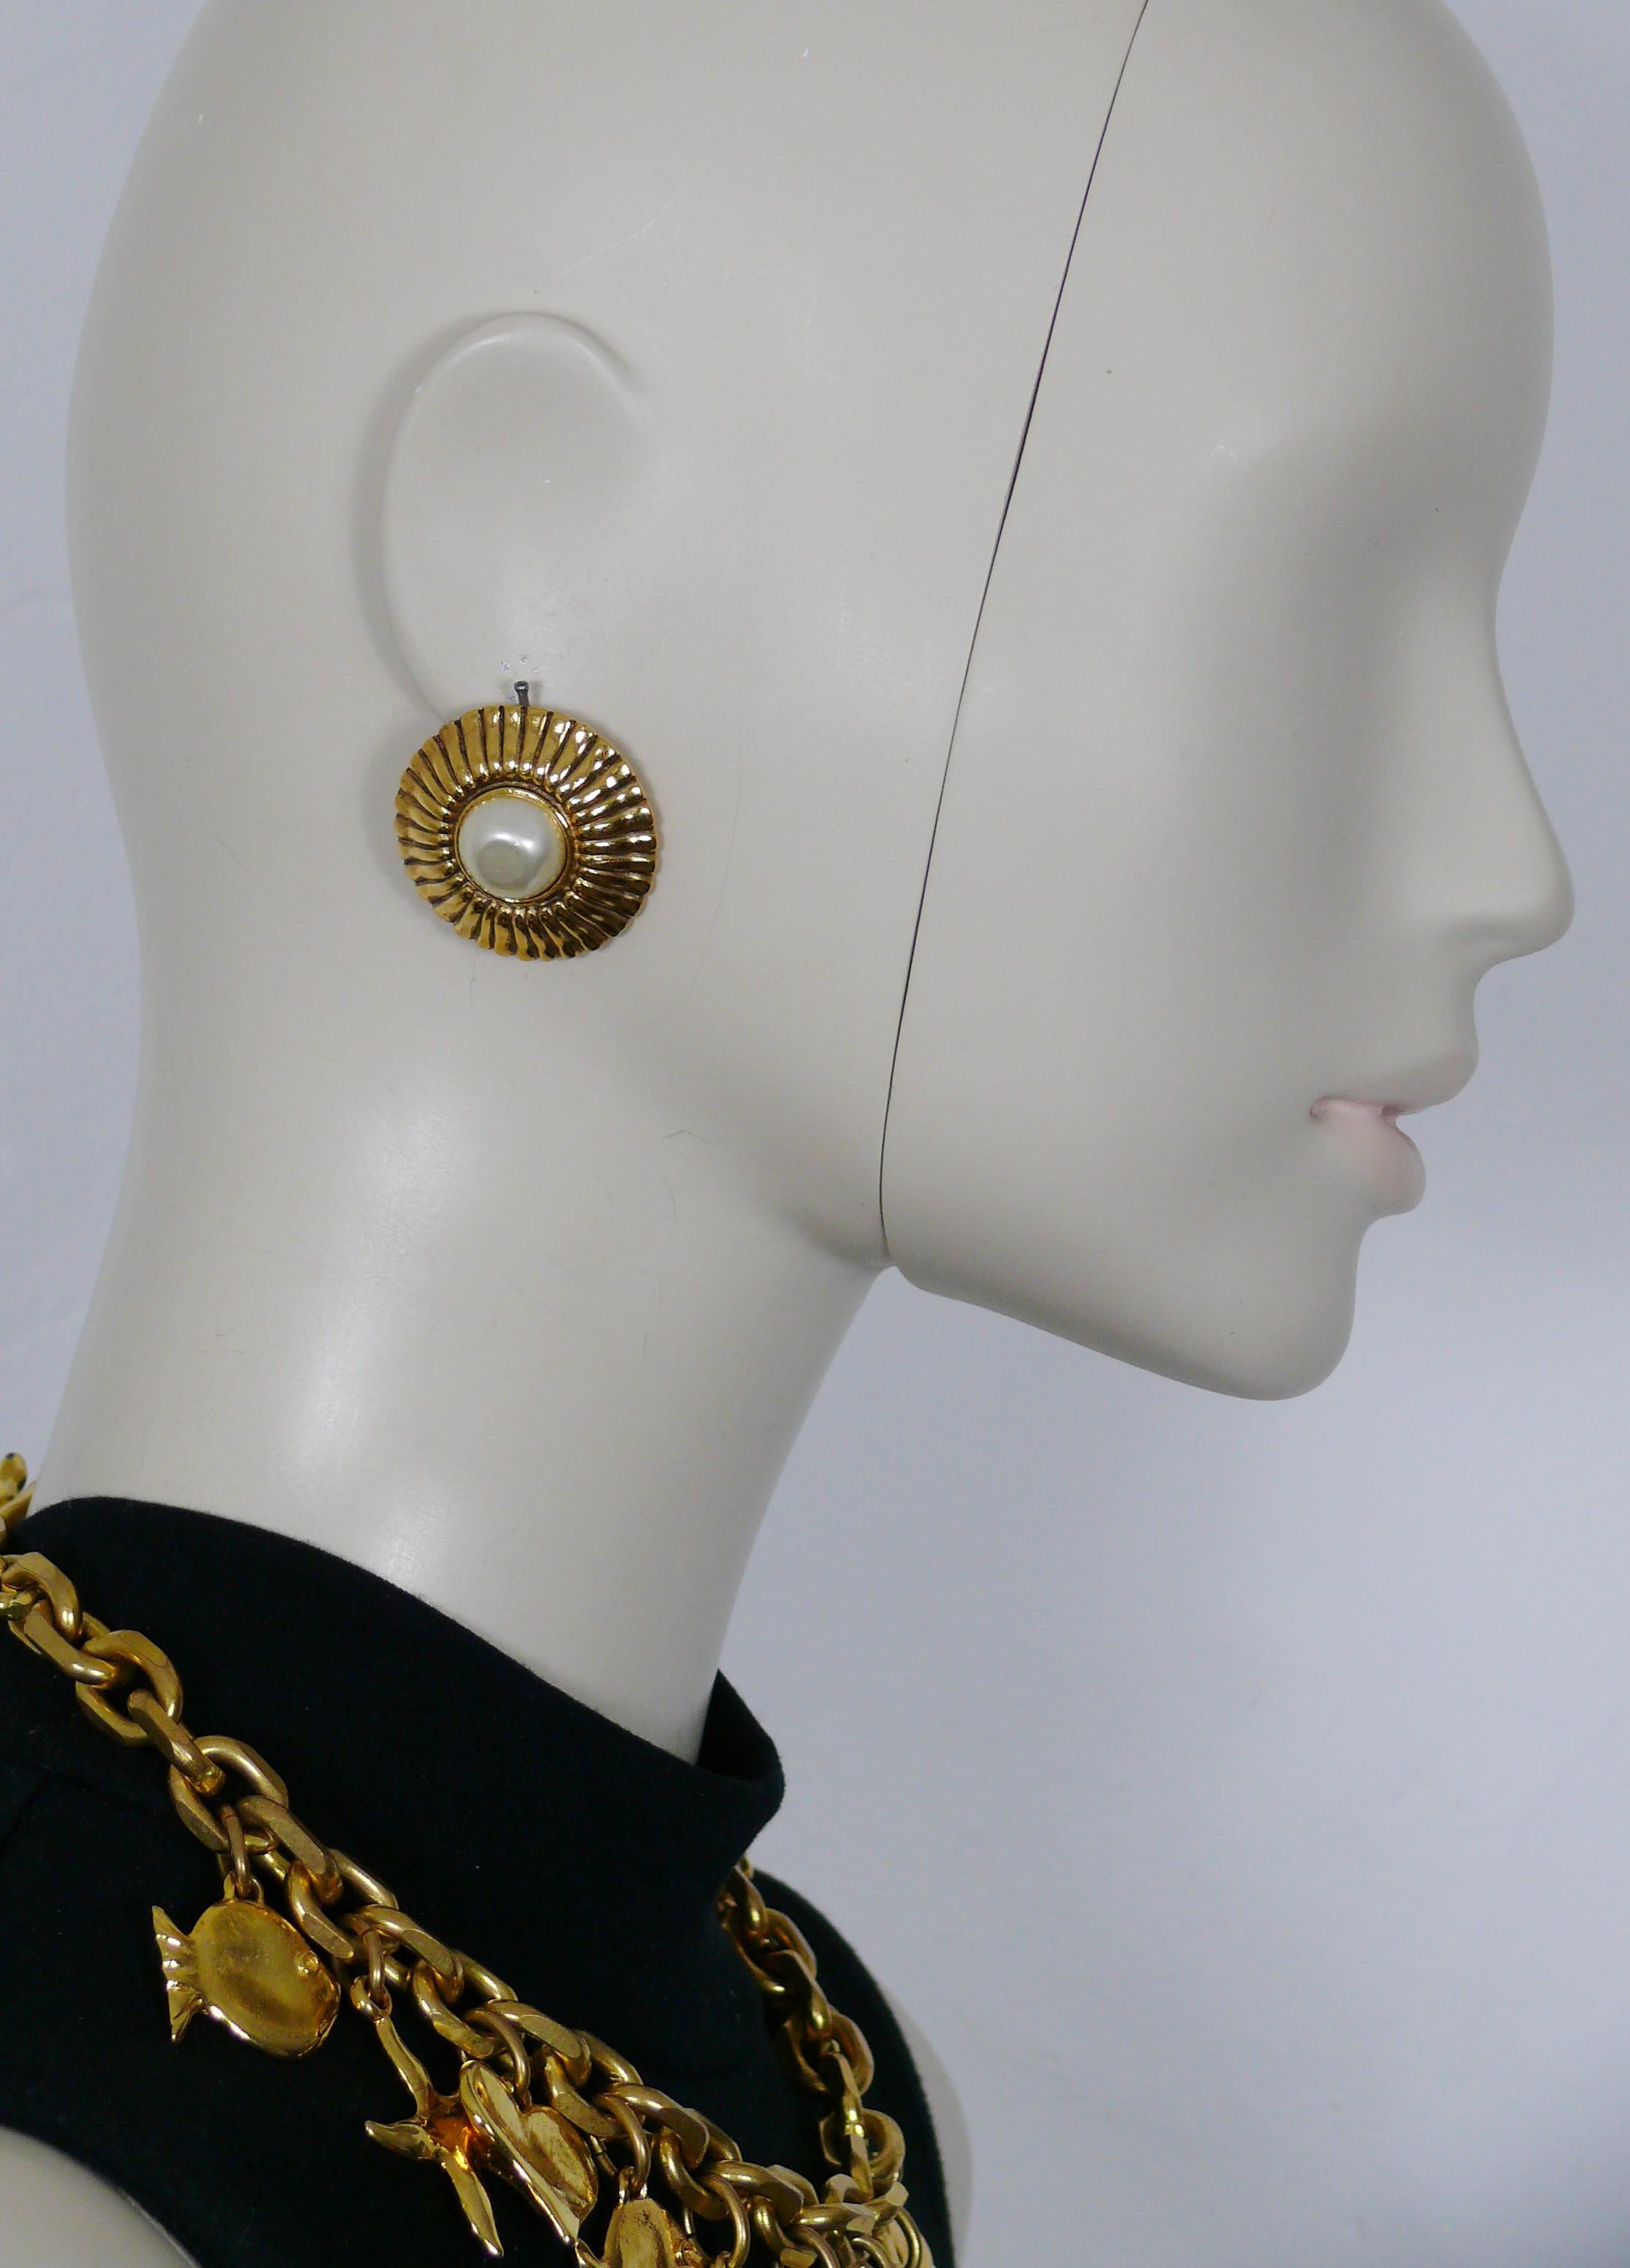 Boucles d'oreilles clip CHANEL en or massif avec un design rayonnant et une fausse perle au centre.

Gaufrage CHANEL Made in France.

Mesures indicatives : diamètre d'environ 3,2 cm (1,26 pouces).

NOTES
- Il s'agit d'un article vintage usagé, il